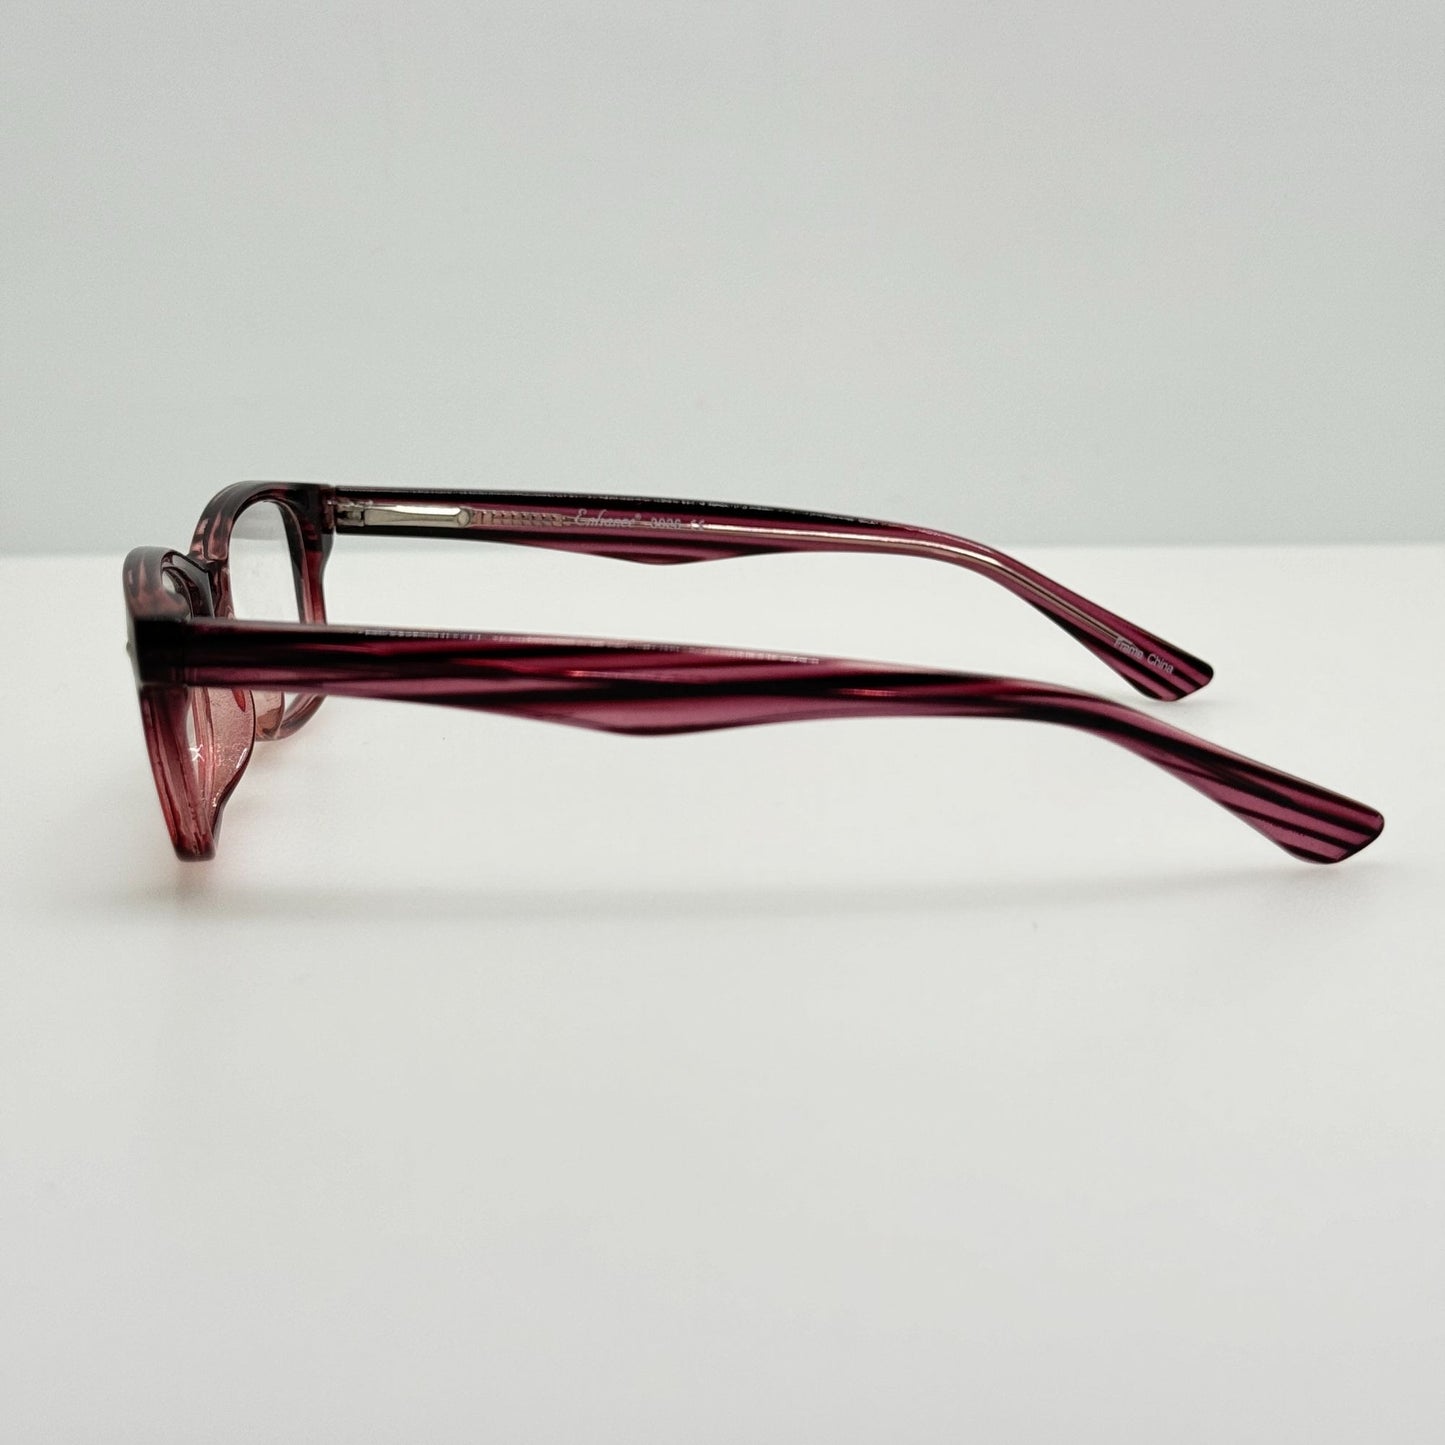 Enhance Eyeglasses Eye Glasses Frames 3928 Burgundy 45-16-130